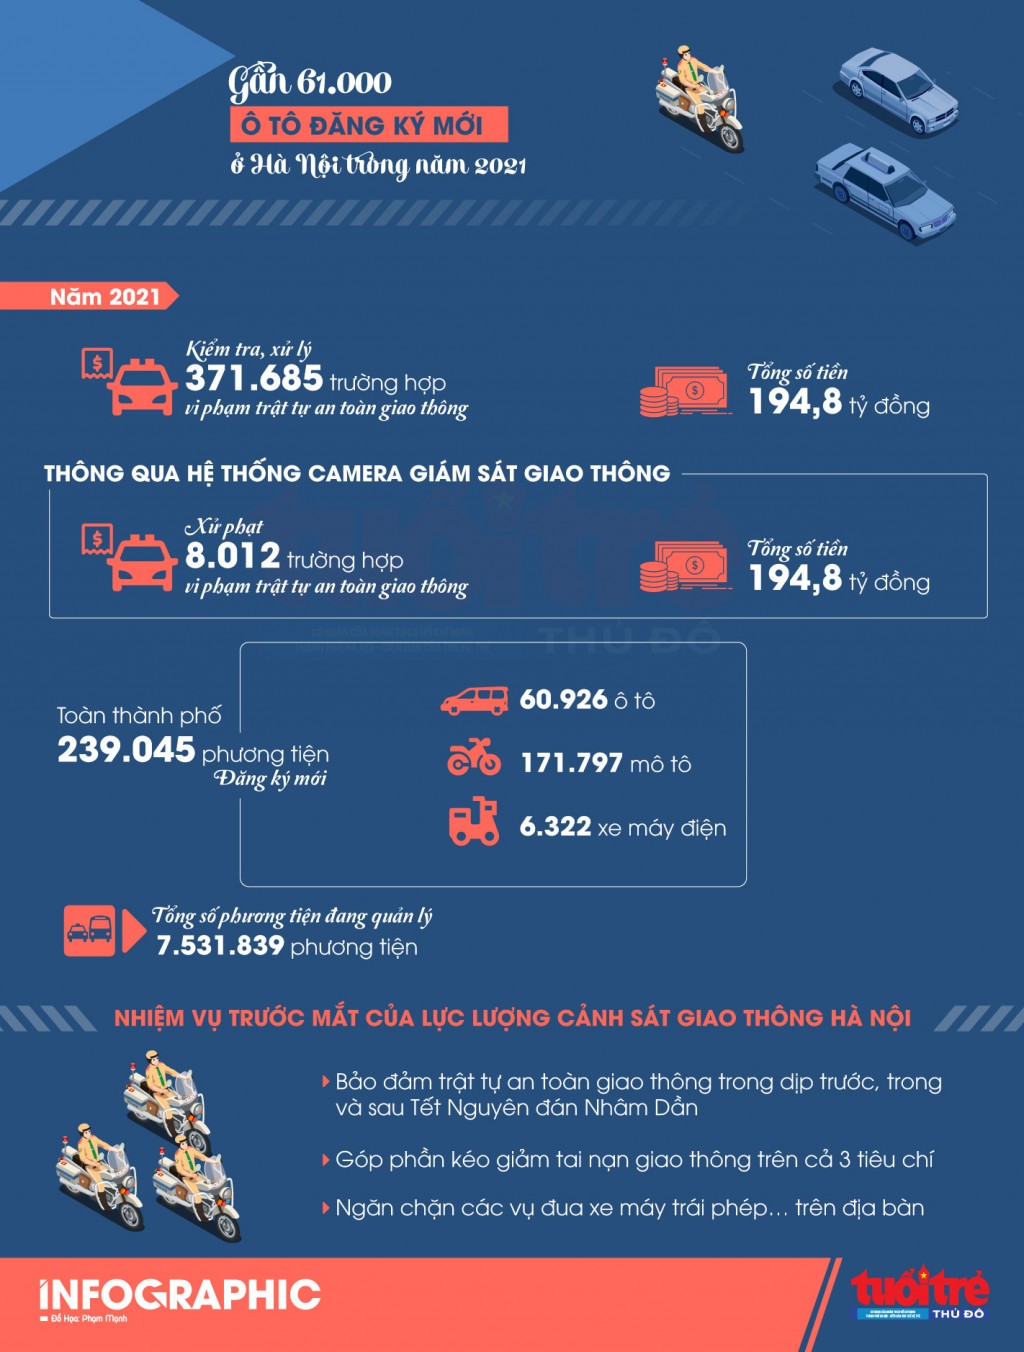 Gần 61.000 ô tô đăng ký mới tại Hà Nội trong năm 2021